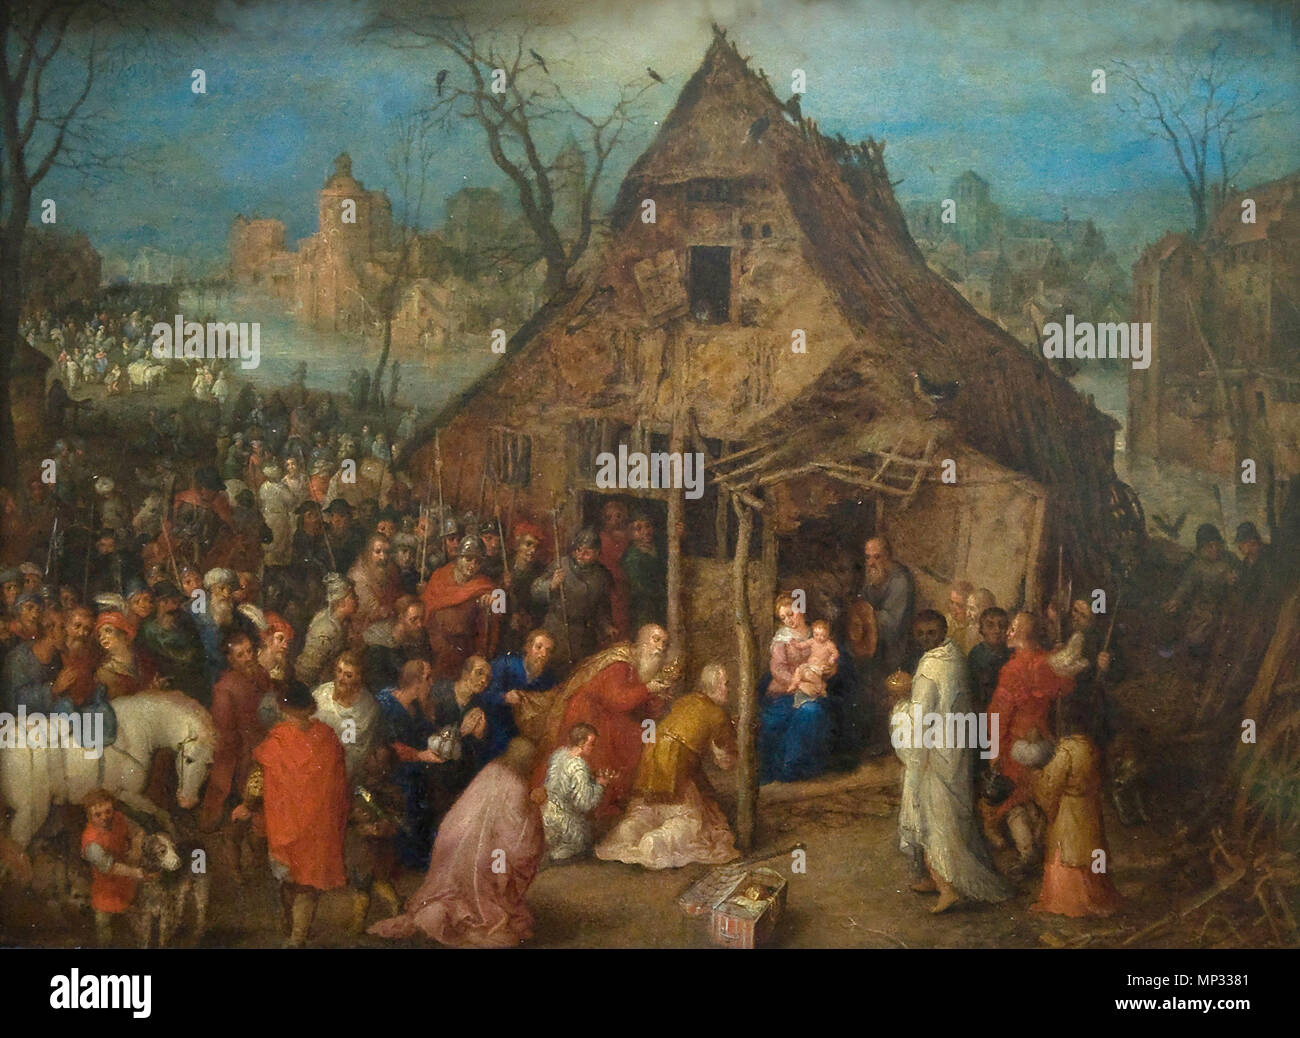 L'Adoration des Mages fin du 16e siècle. 696 Jan Brueghel de Oude (1568-1625) - porte de koningen Aanbidding (1600) - kmska 001 28-02-2010 14-20-47 Banque D'Images